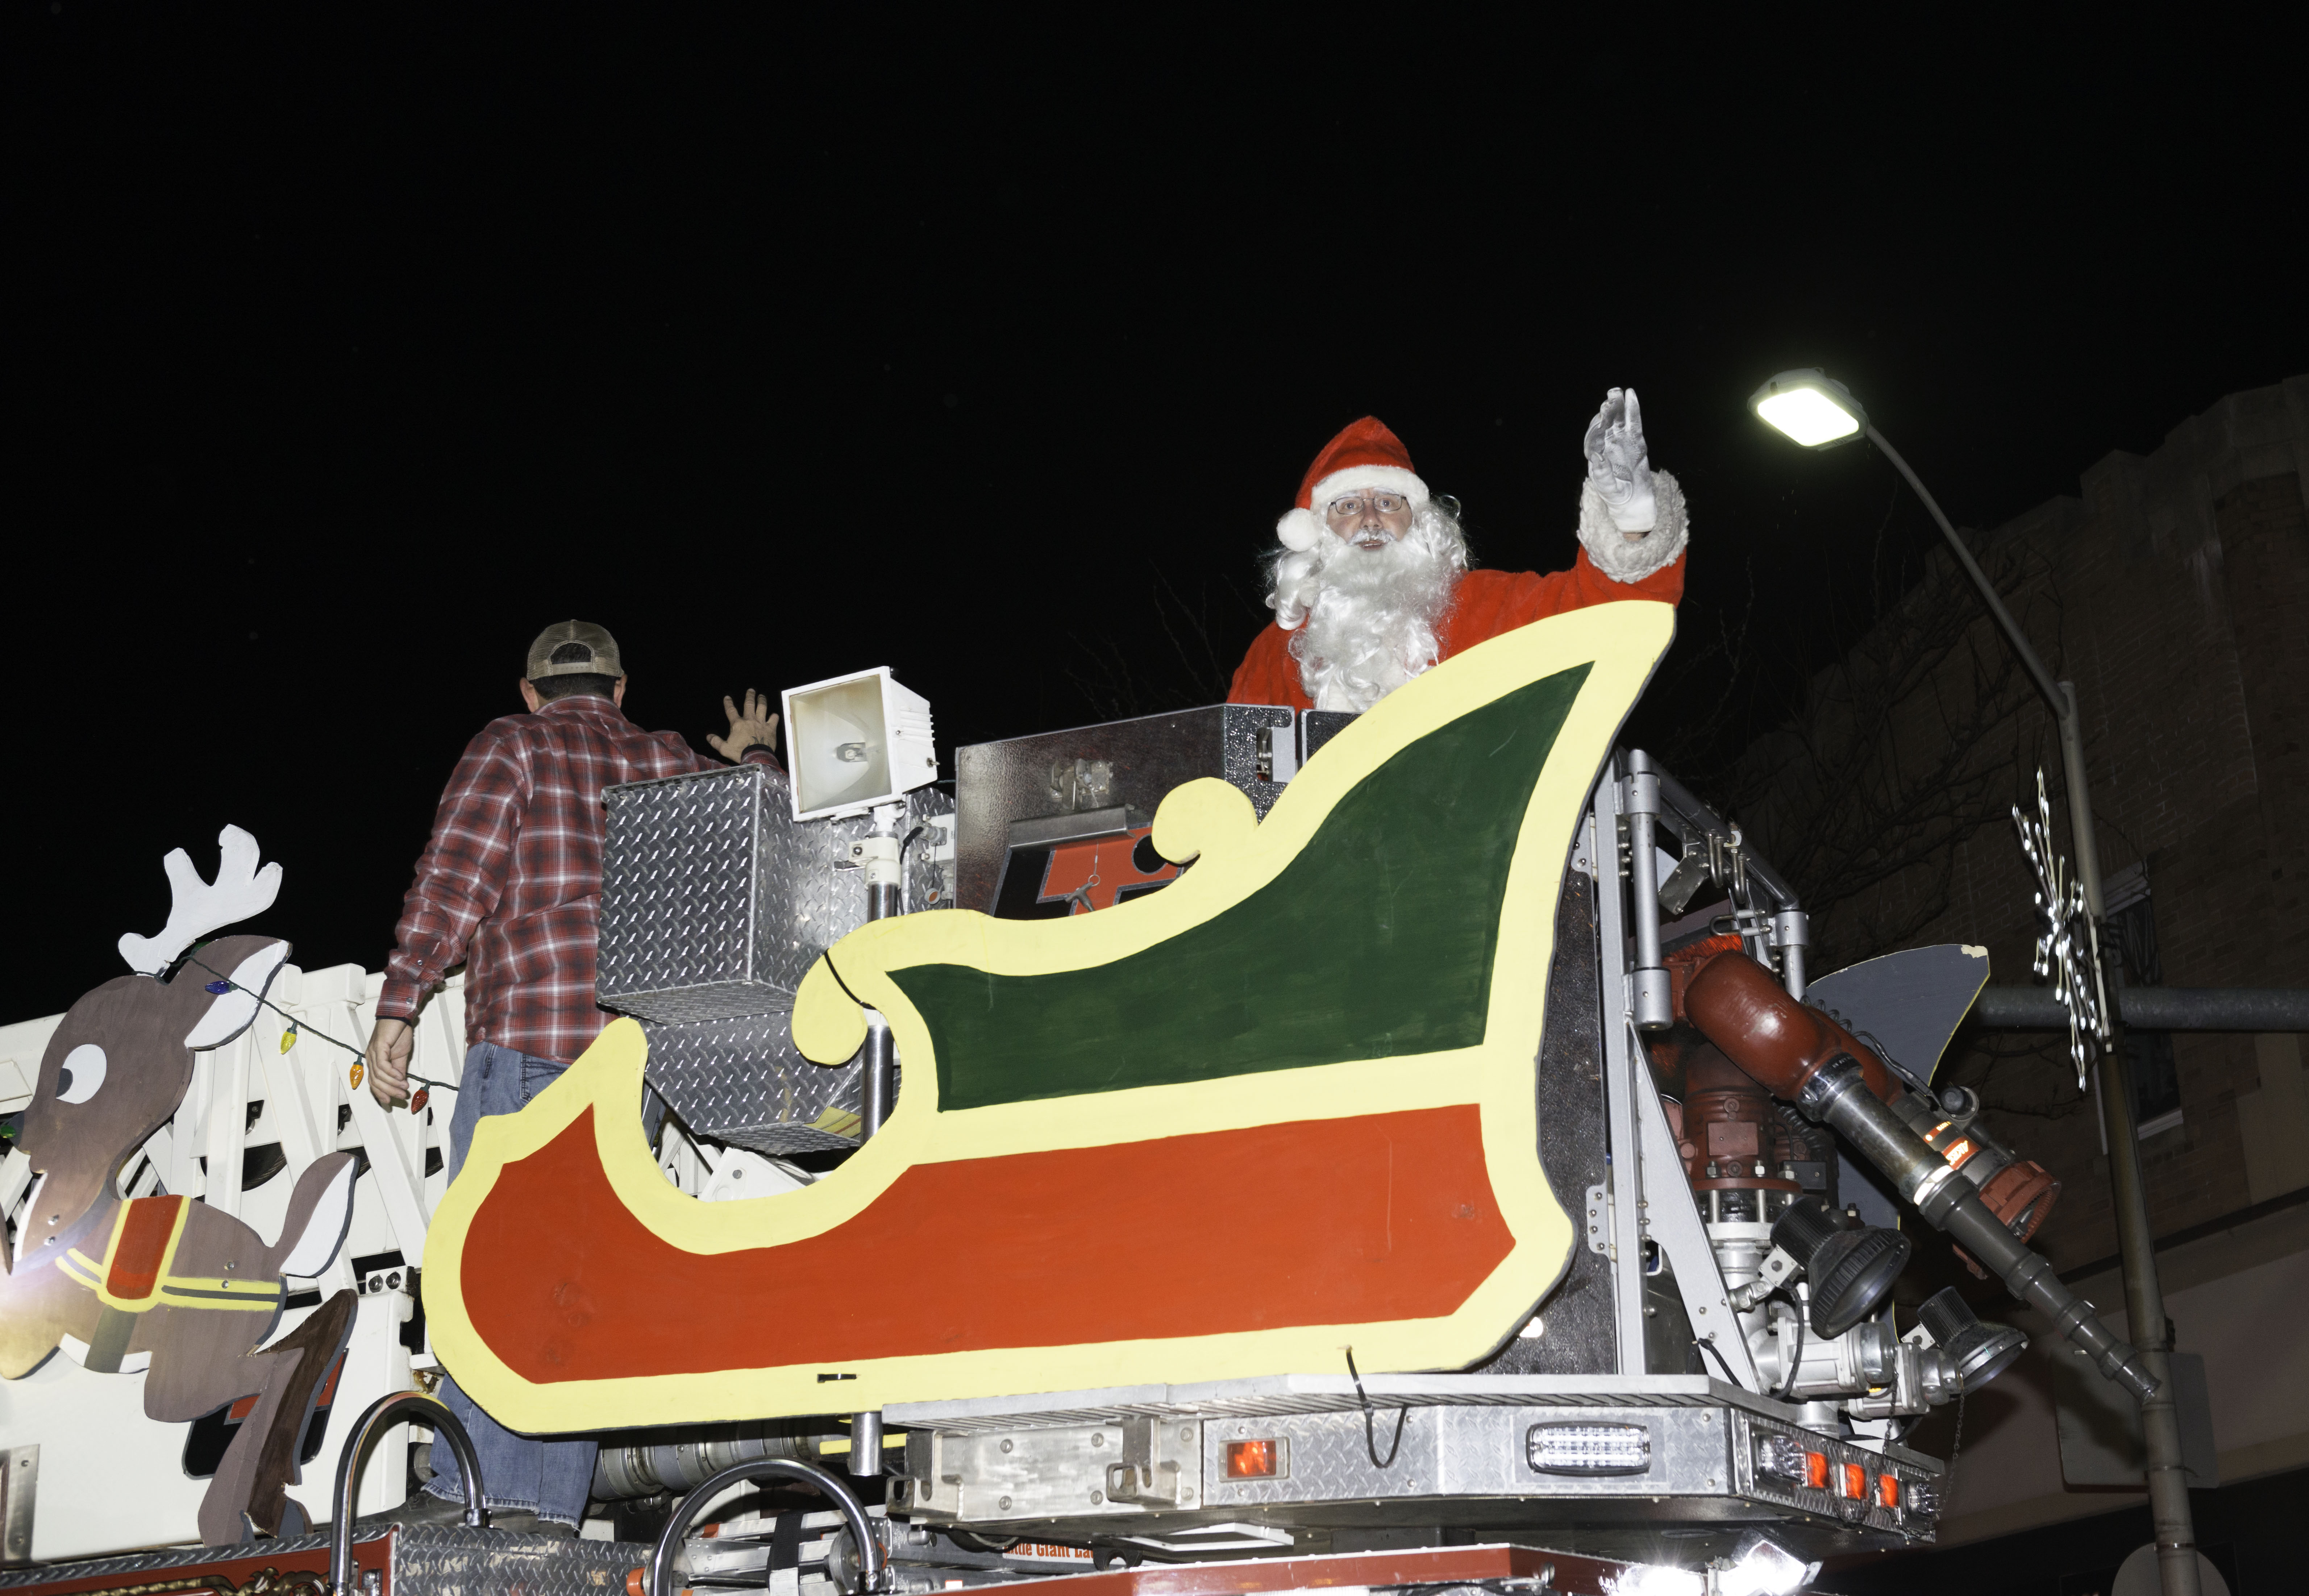 Santa HQ At Washington Square Mall - Seasonal Memories